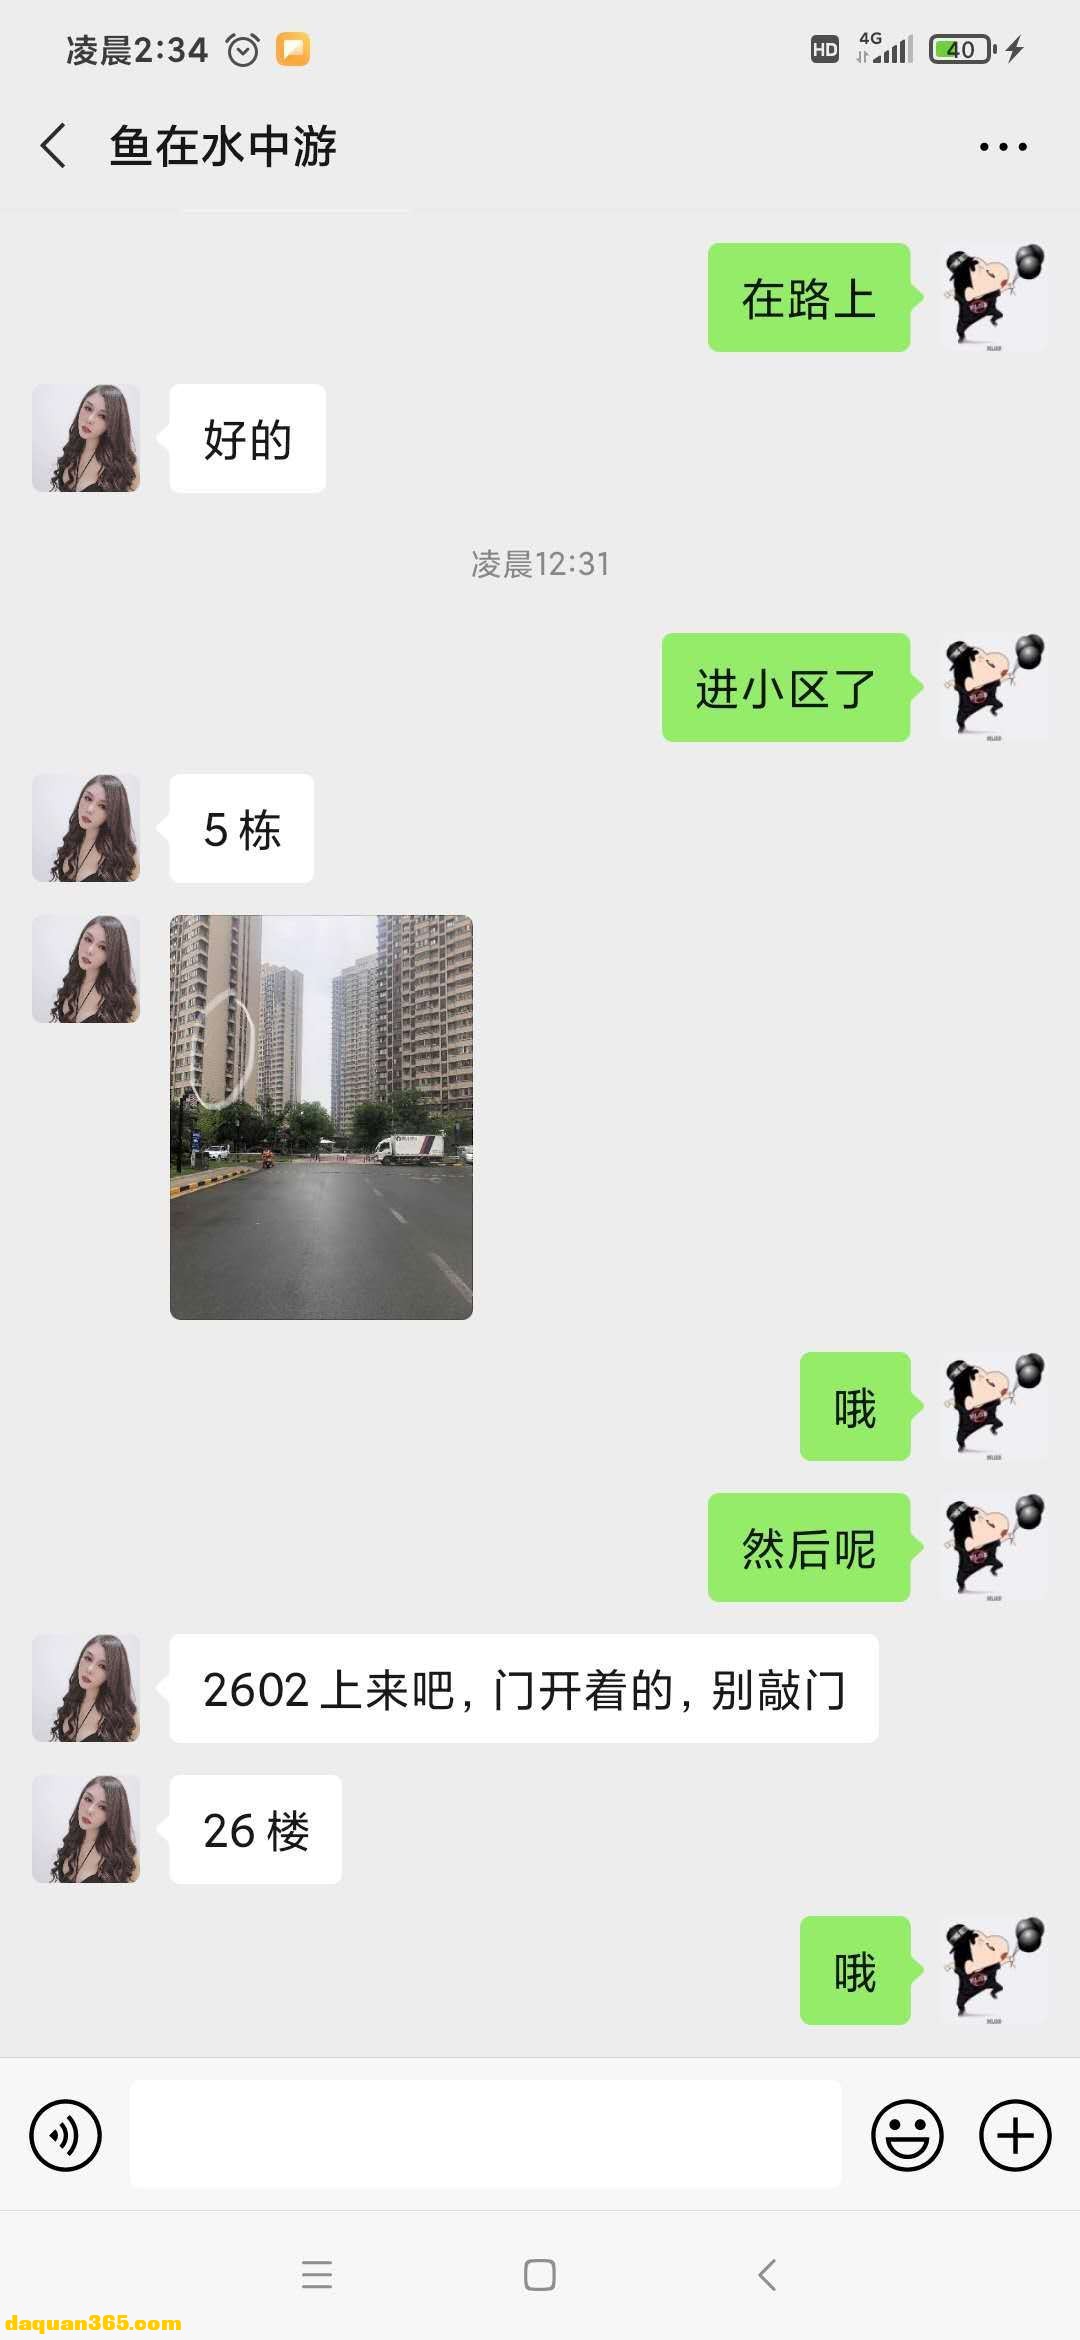 [南京]【2020年10月】本人认为是南京最牛逼的楼凤了-4.jpg